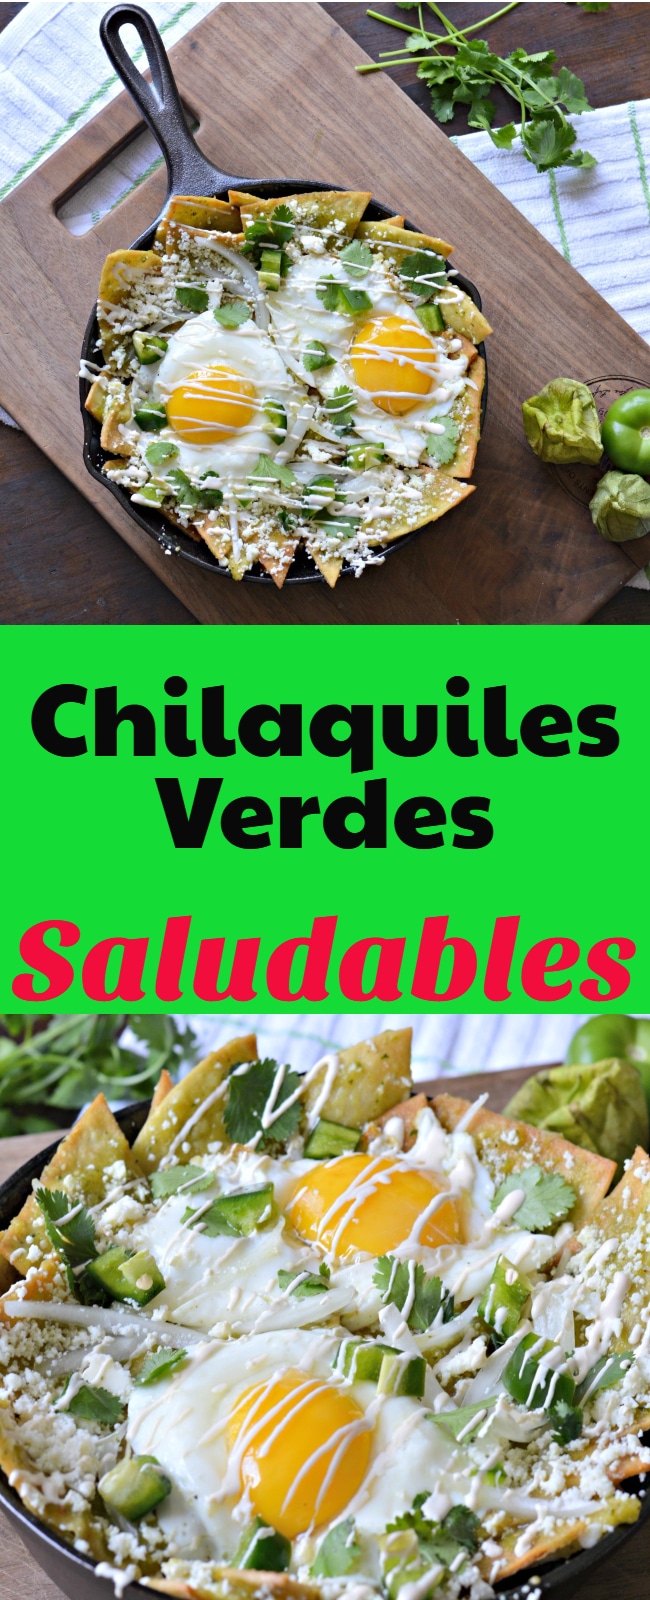 Estos Chilaquiles Verdes ademas de ser un desayuno completo y muy rico son tambien una nueva forma de cambiar las frituras por alimentos sin grasa, Te invito a que los pruebes!